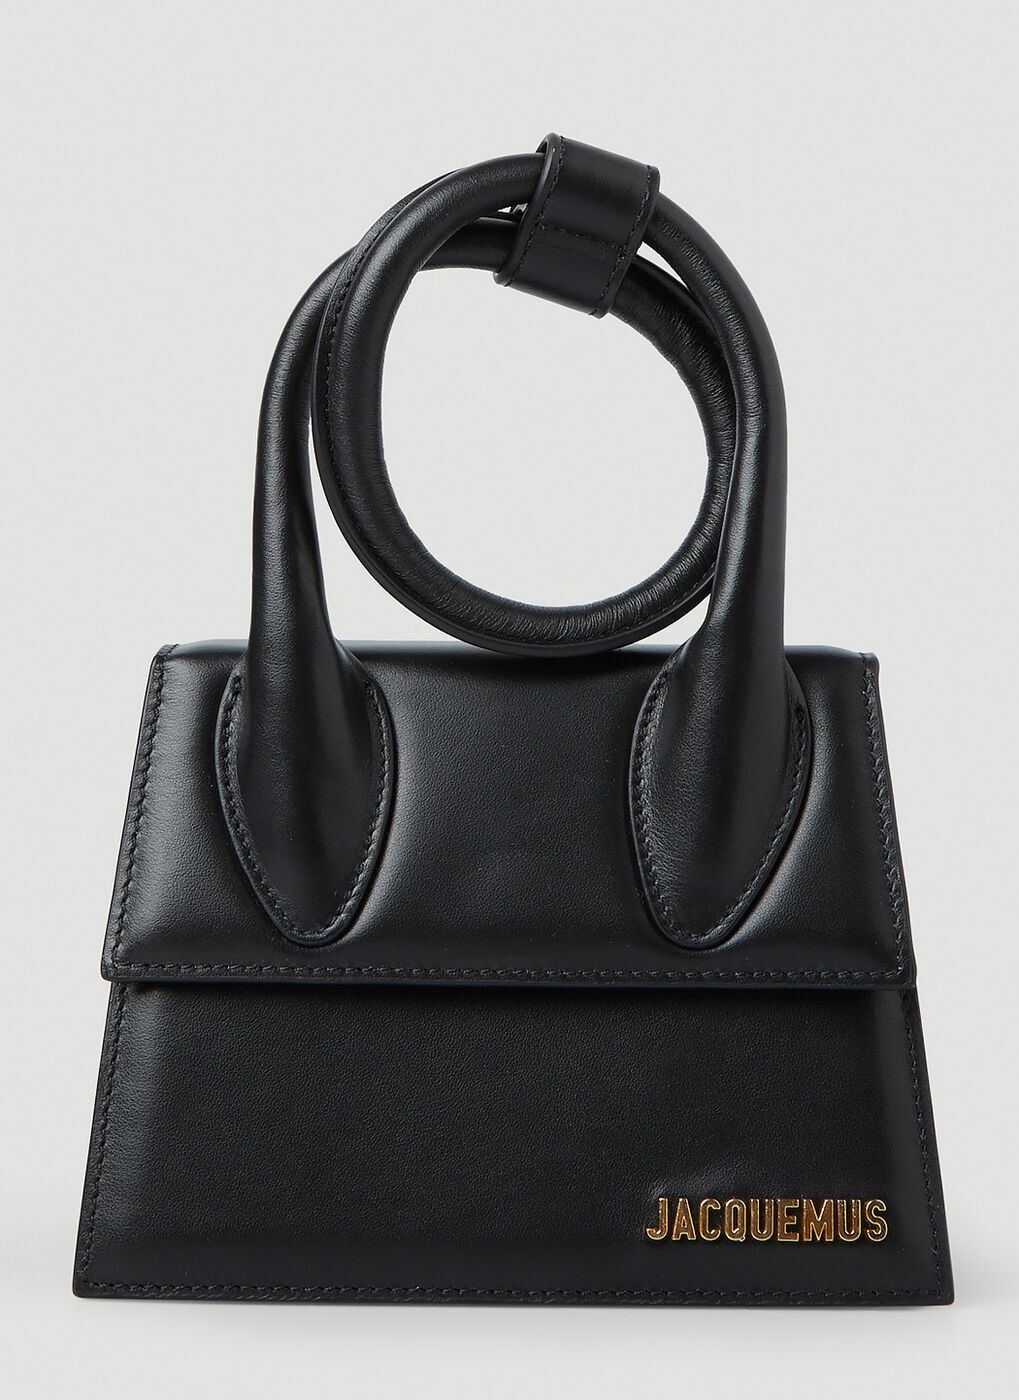 White Chiquito medium leather handbag, Jacquemus